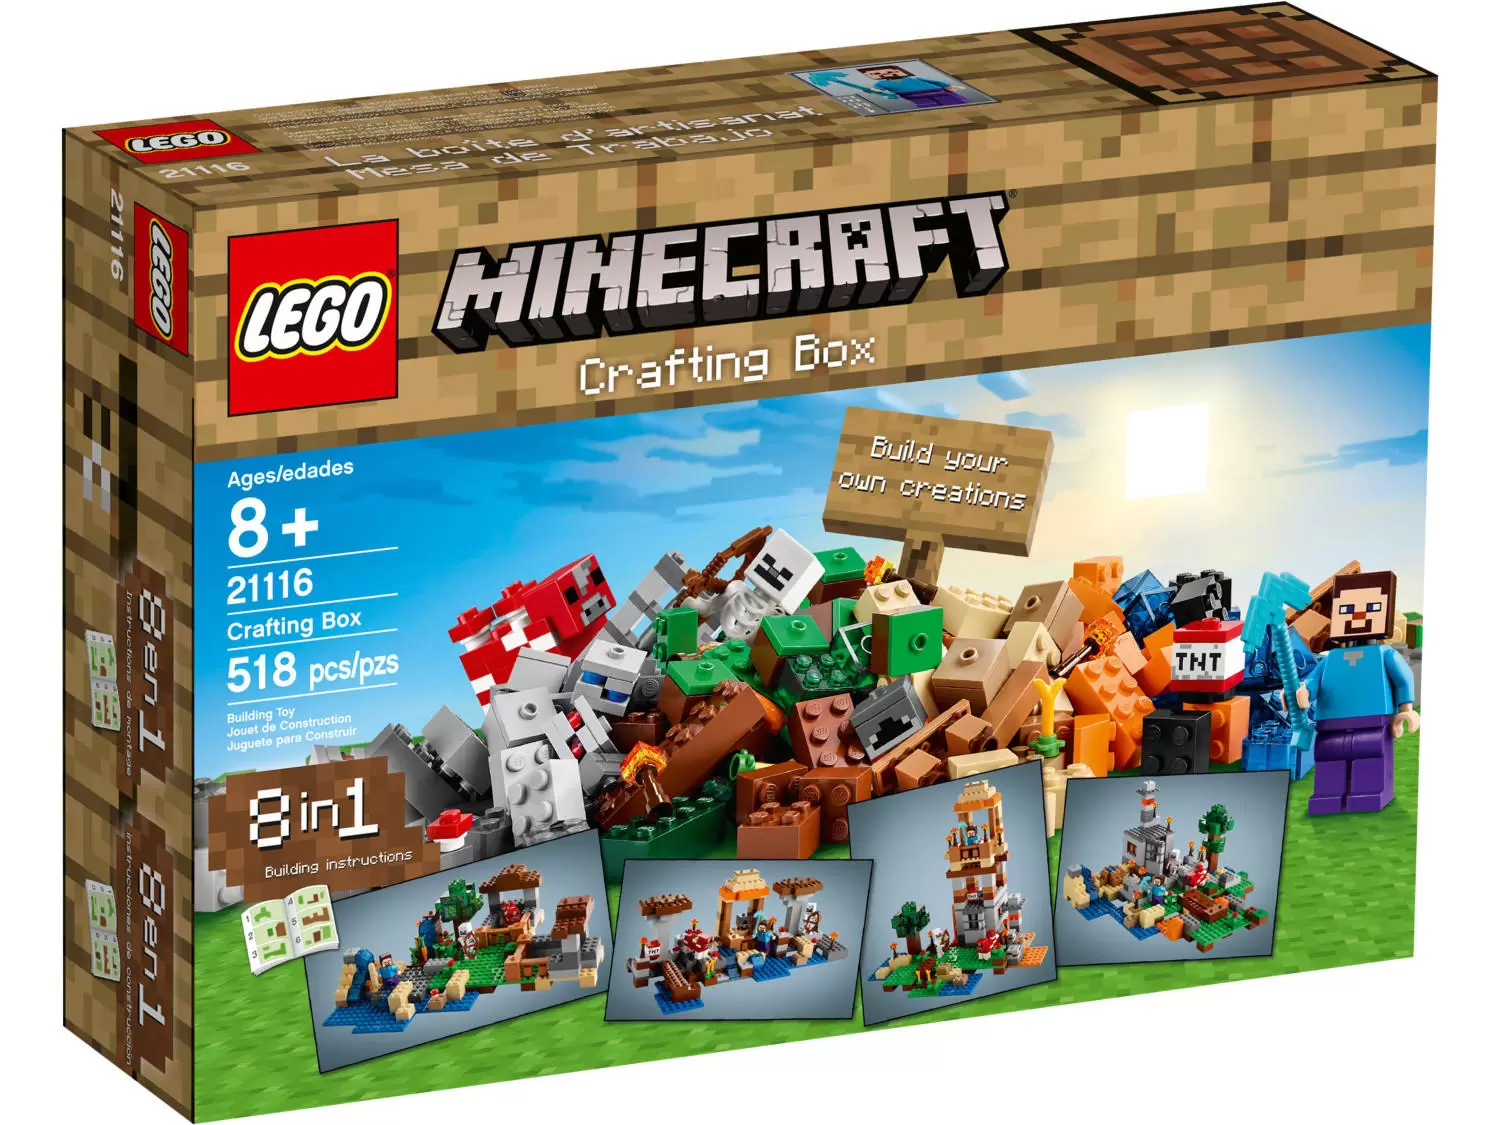 LEGO Minecraft - Crafting Box